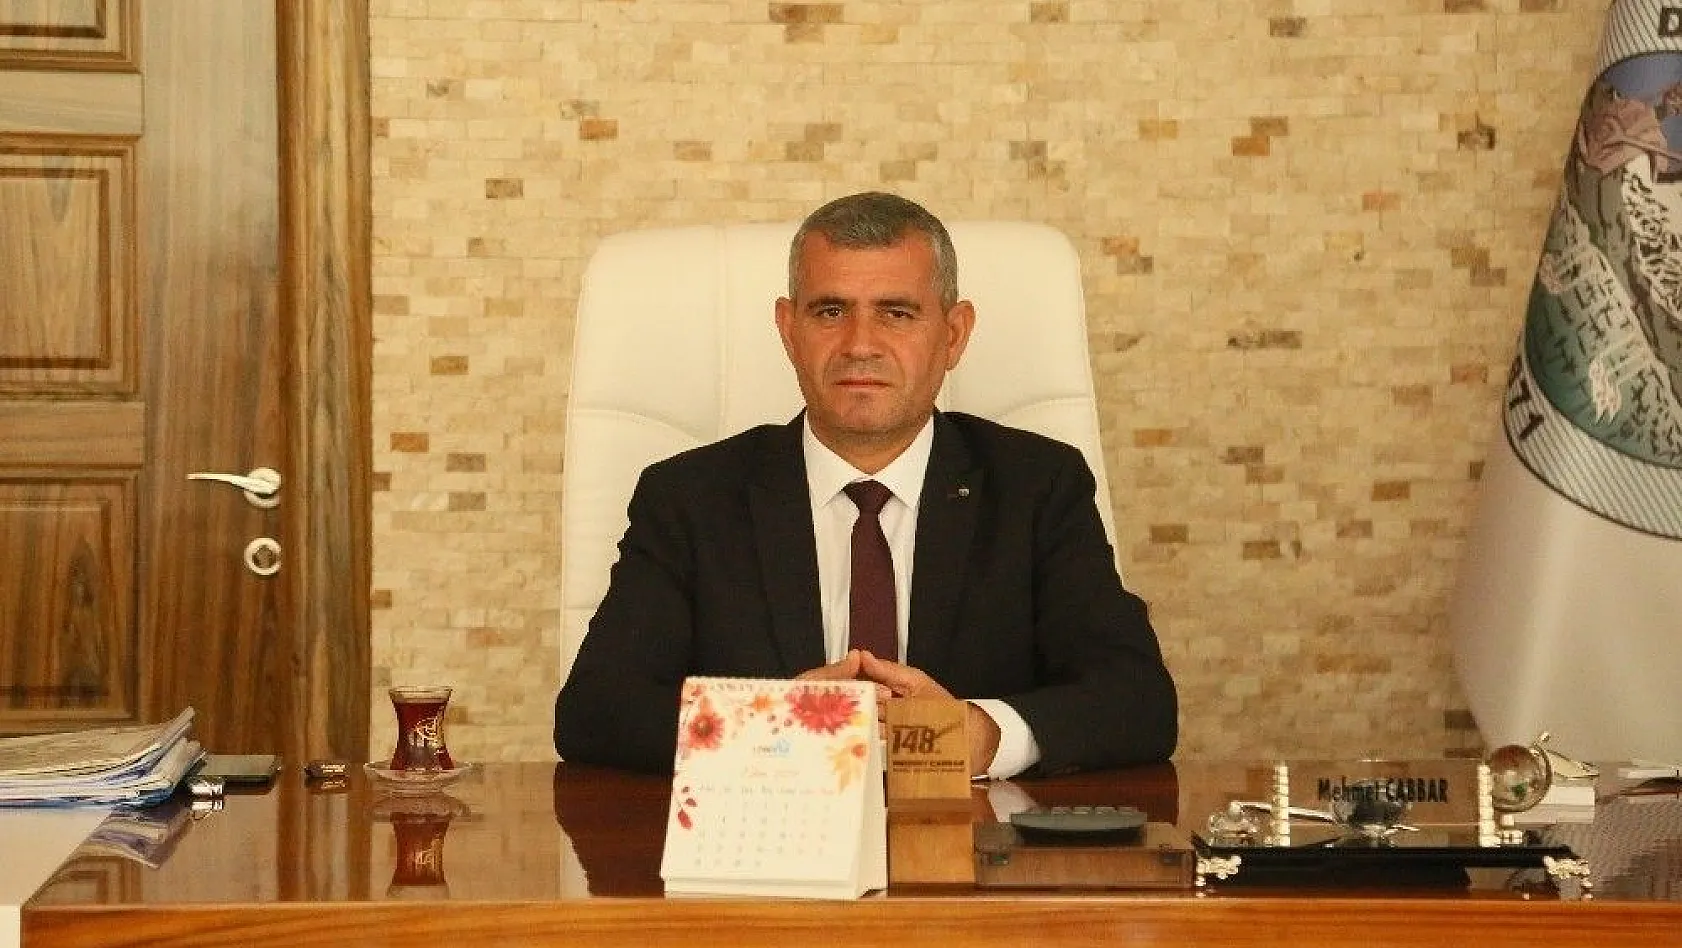 Develi Belediye Meclis Üyesi İsmail Yazıcı'dan Örnek Davranış